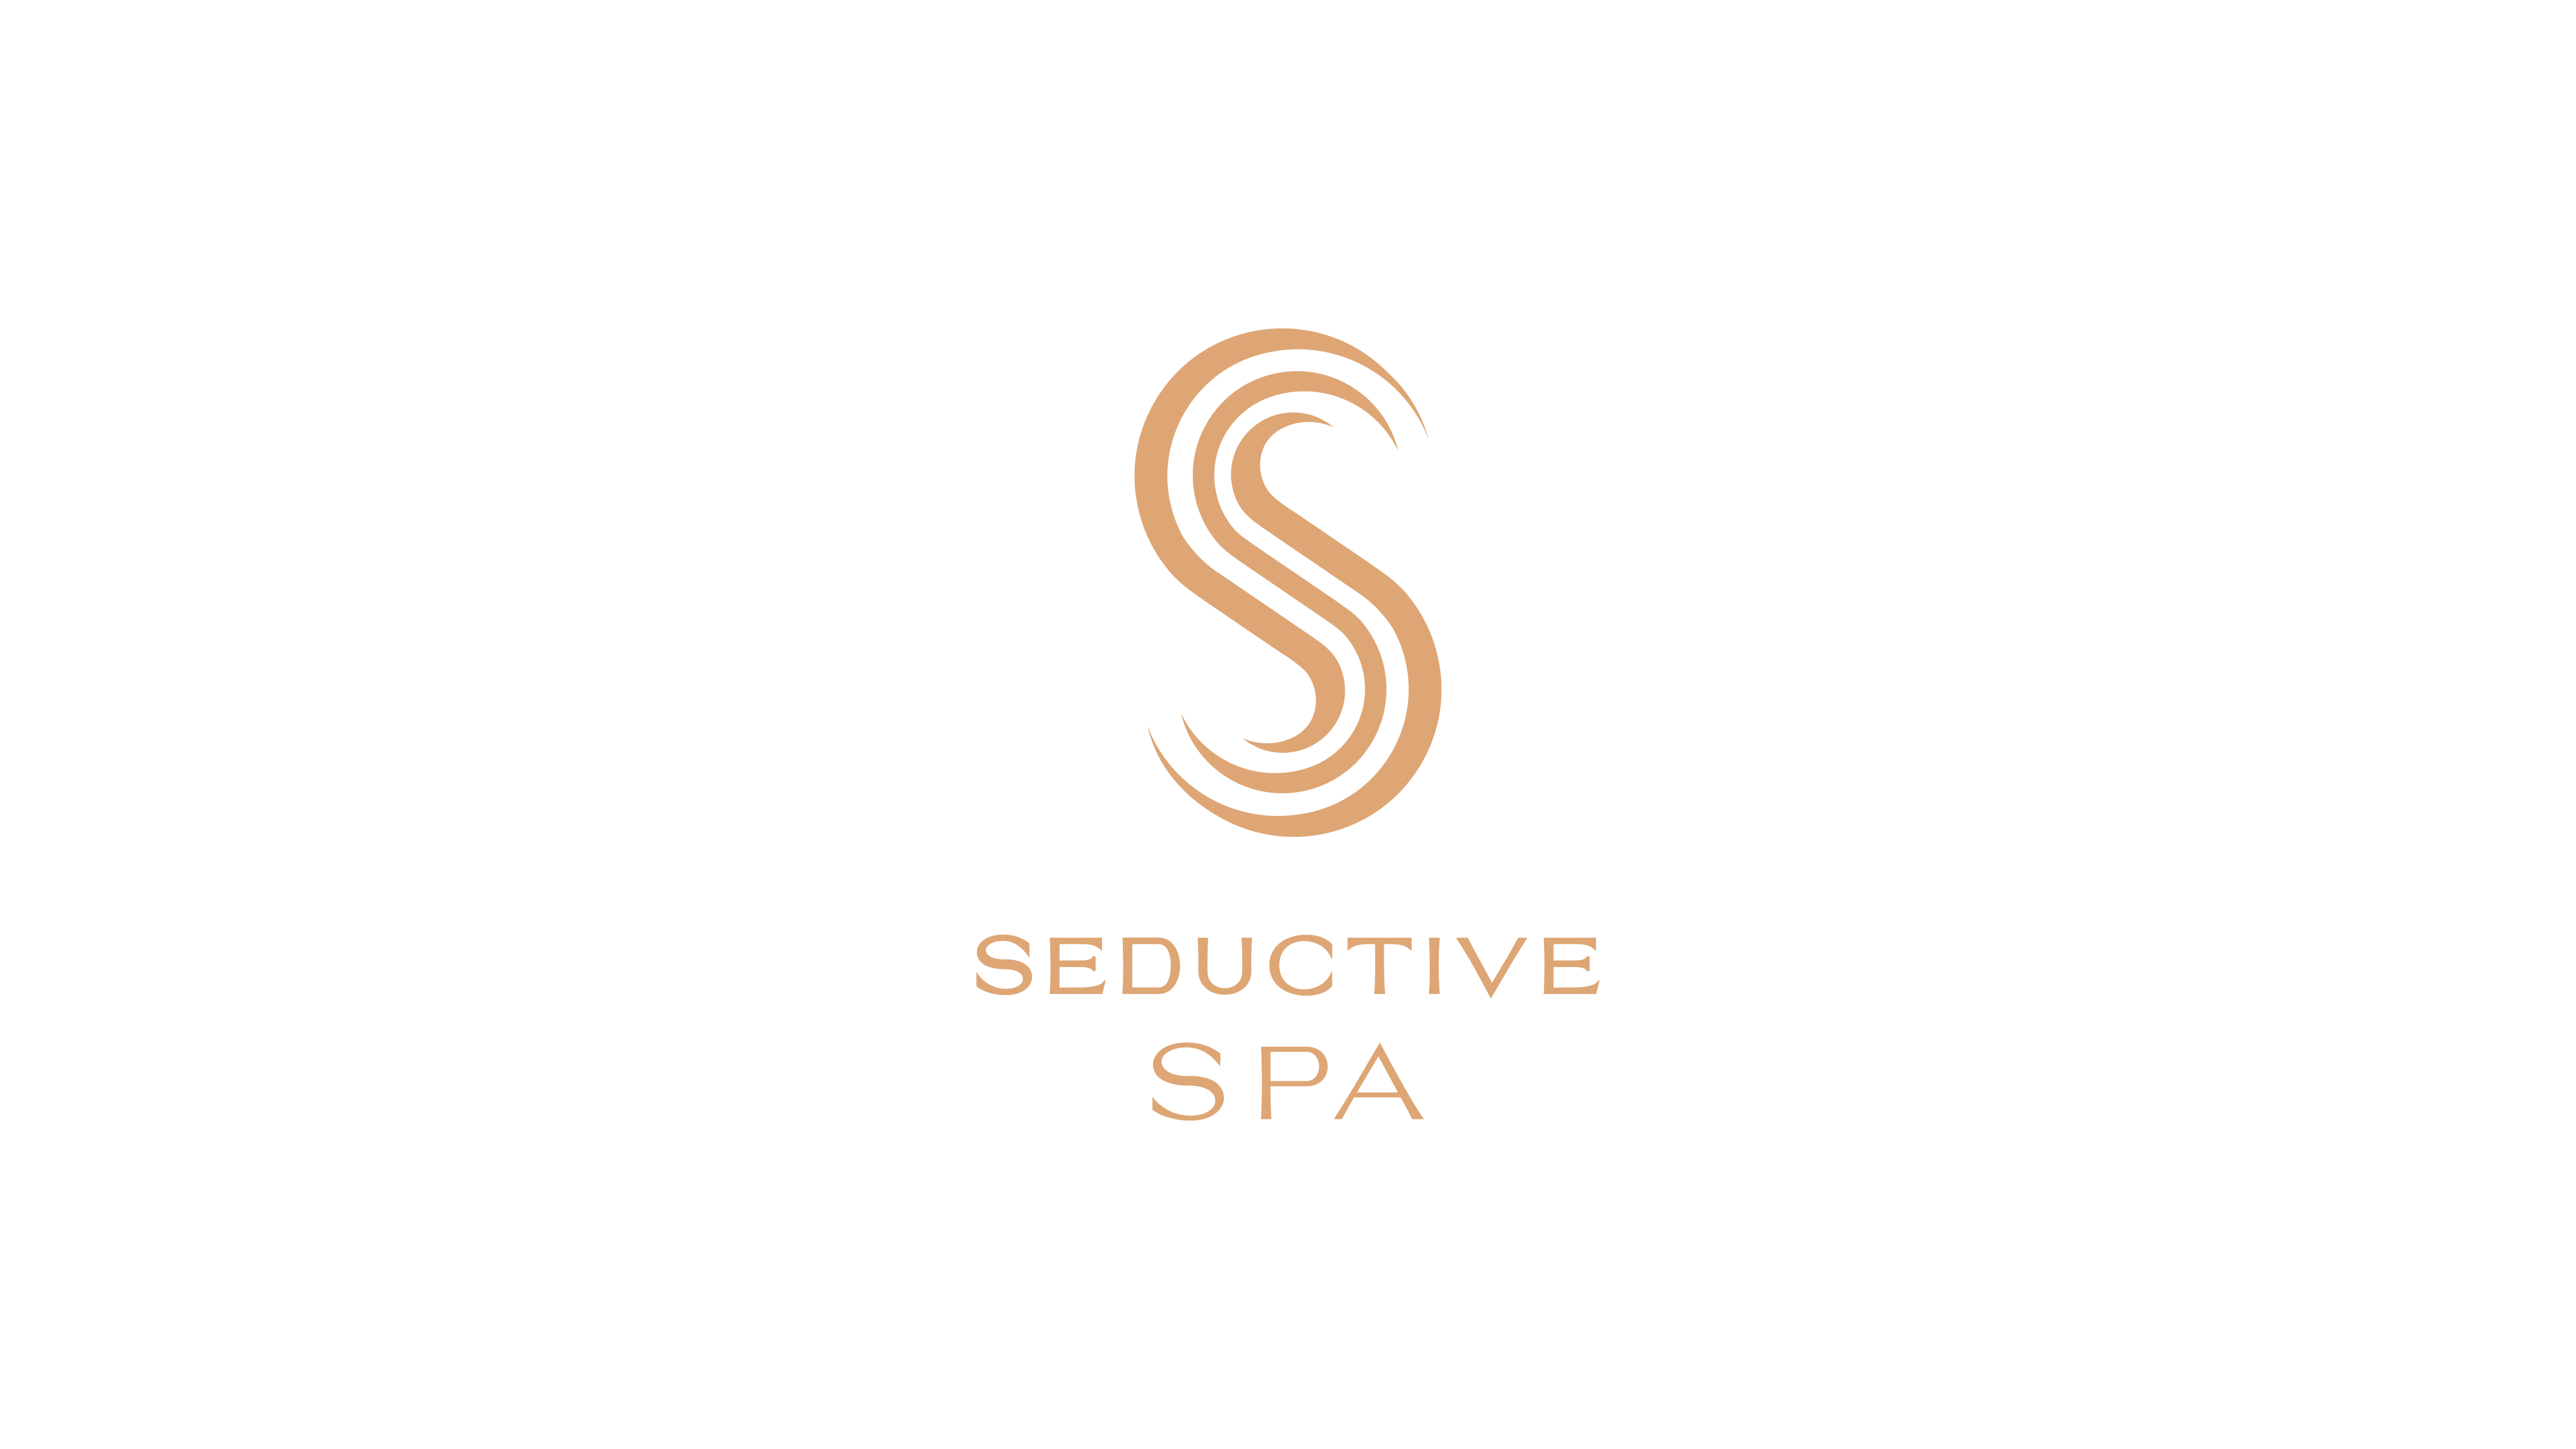 Logo Seductive Spa fondo transparente-02